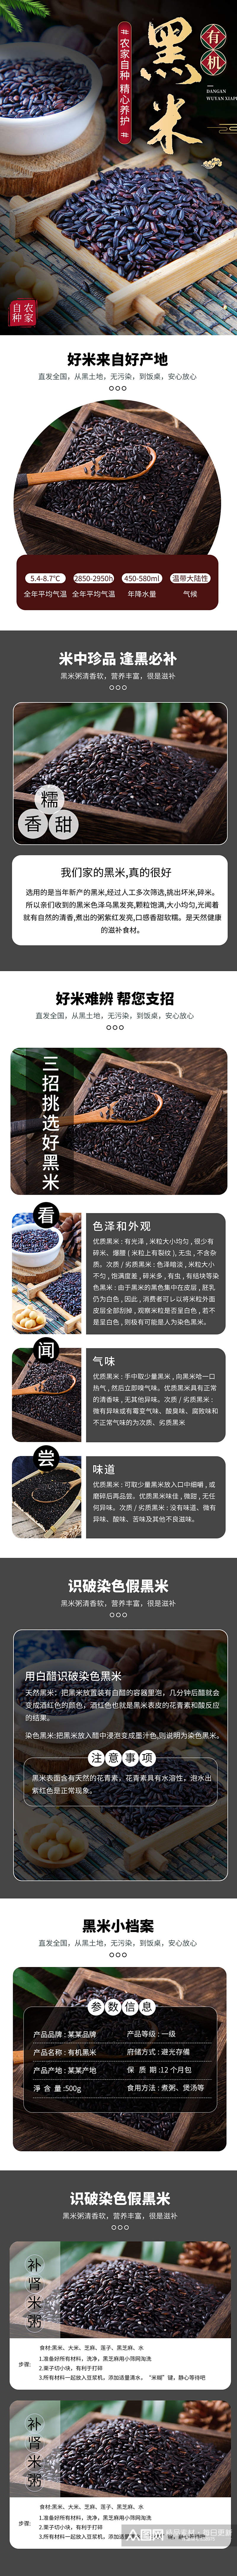 简约中国风黑米大米粮食详情页素材